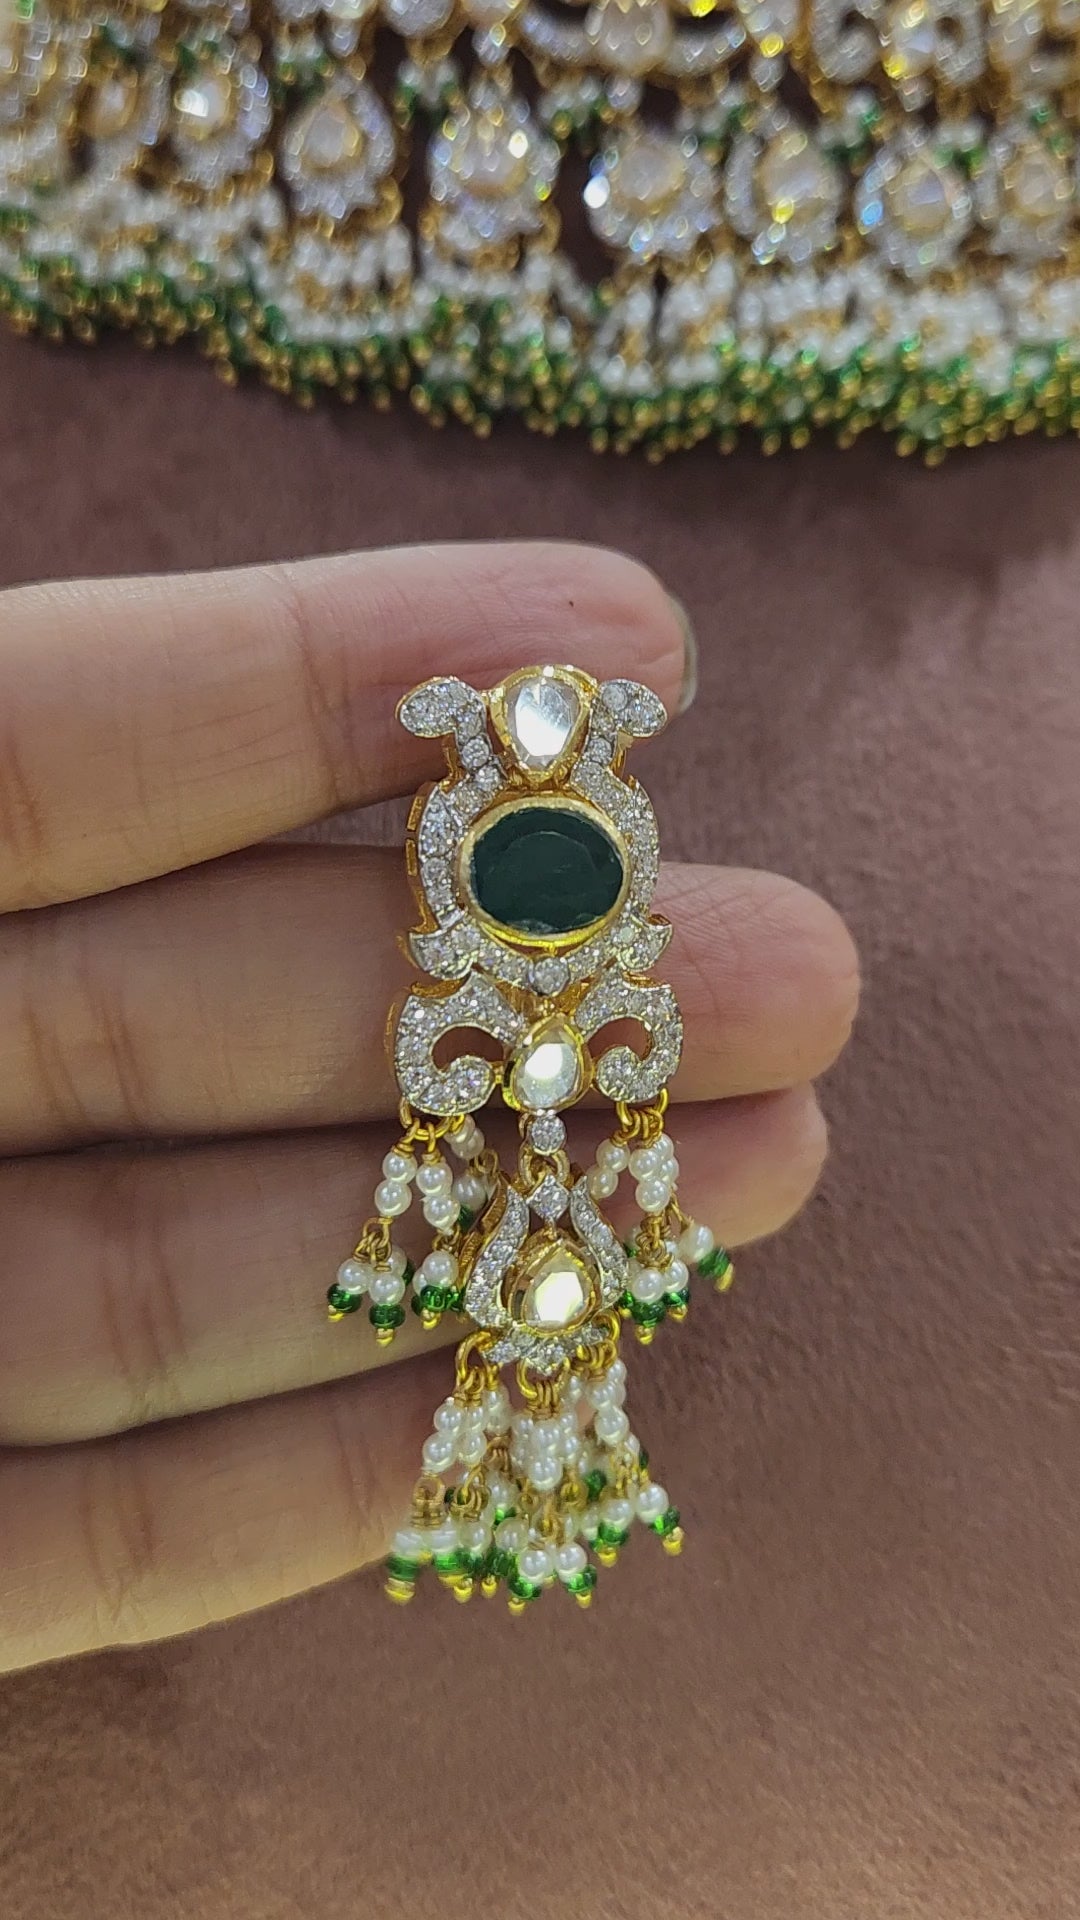 Rajputi Jewellery Earrings - Buy Rajputi Earrings online at Best Prices in  India | Flipkart.com